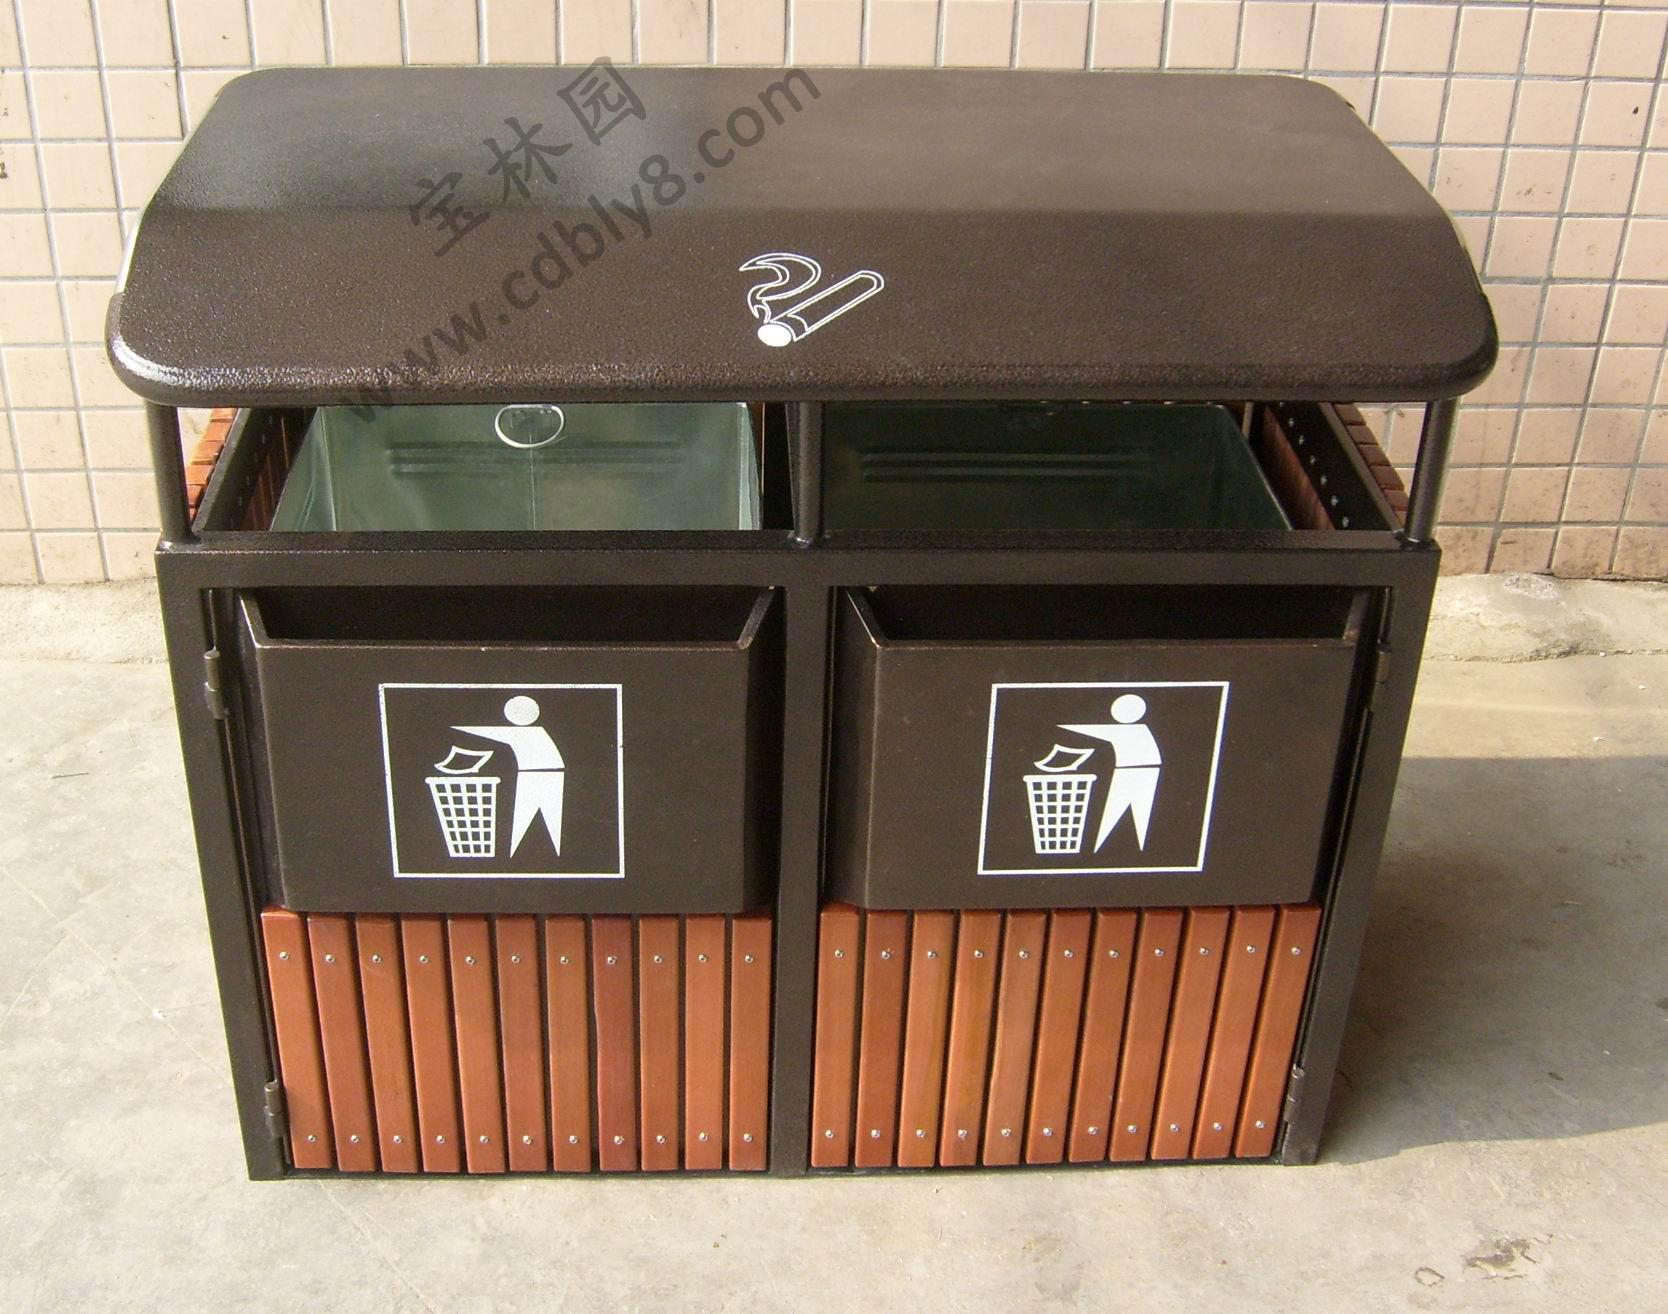 240L垃圾桶,分类垃圾桶,脚踏垃圾桶,挂车垃圾桶,户外垃圾桶,环卫垃圾桶生产厂家-林辉塑业